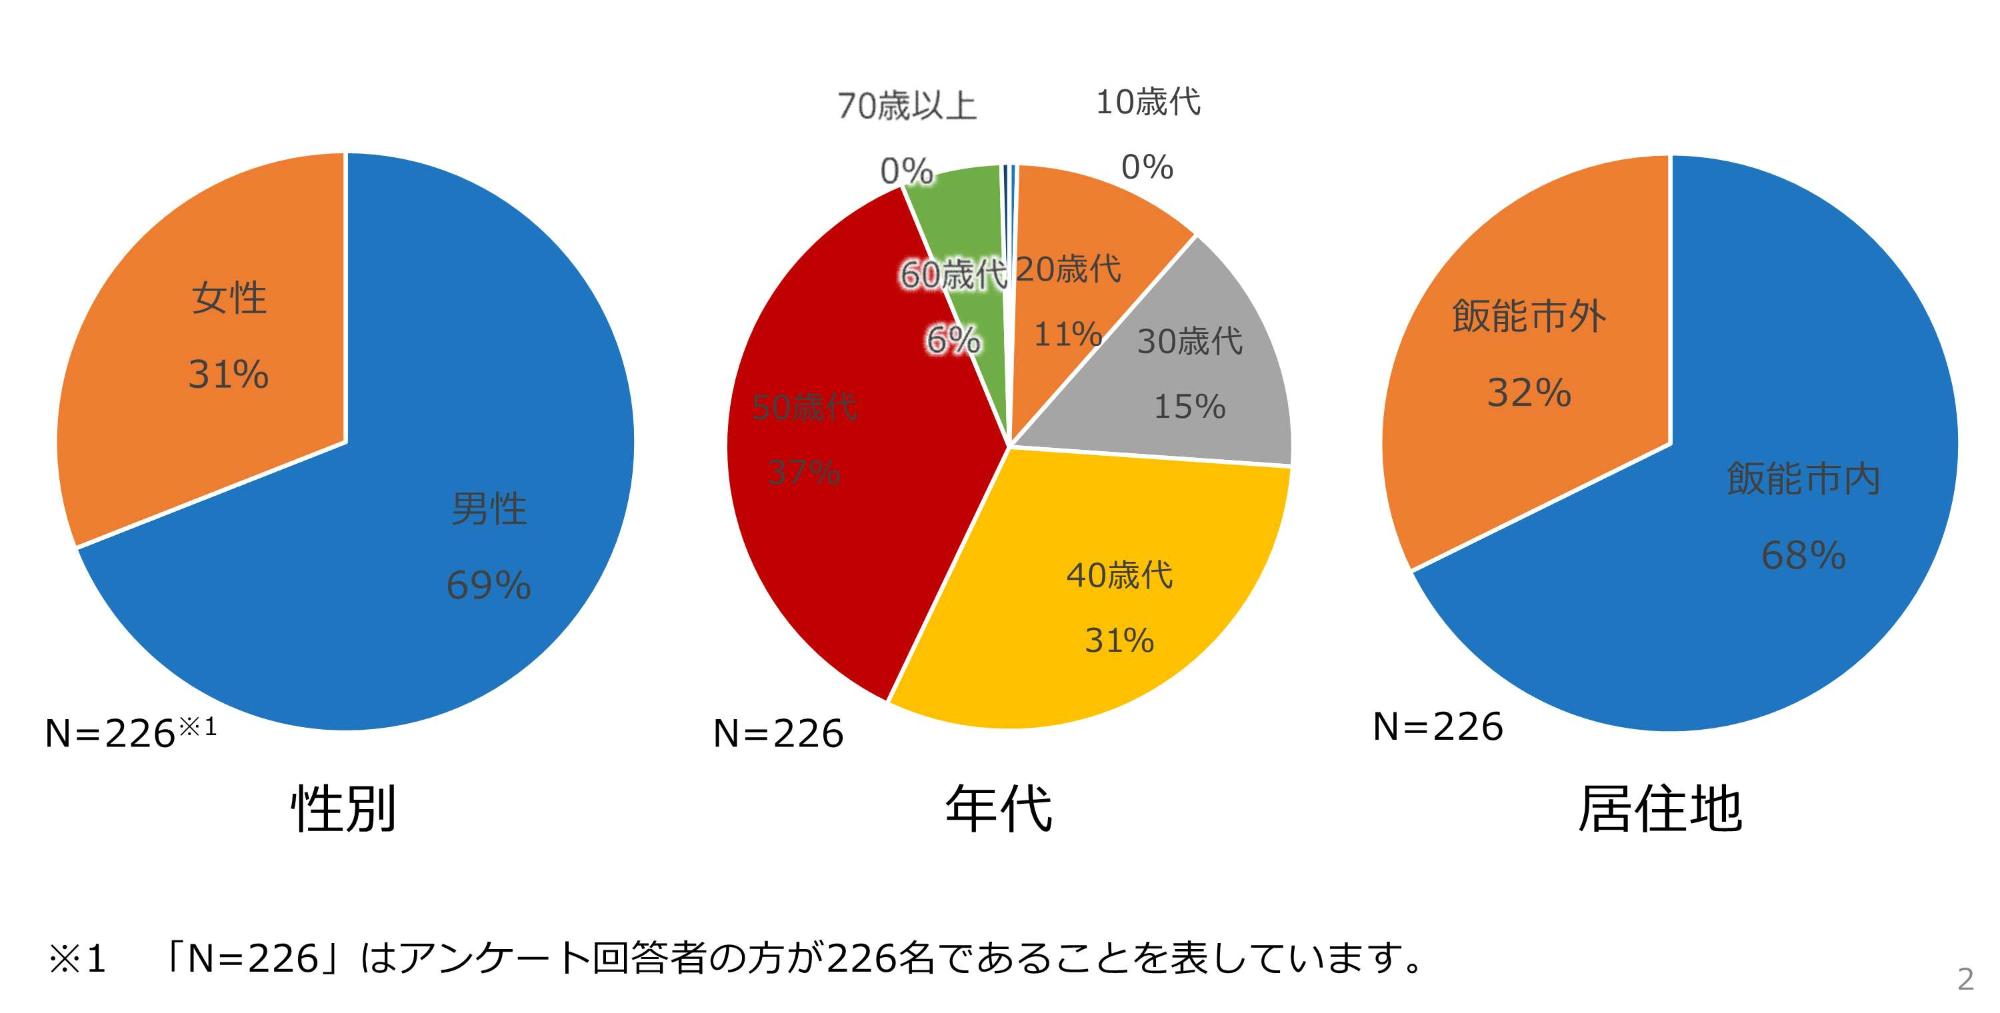 参加者アンケートの結果の円グラフの画像